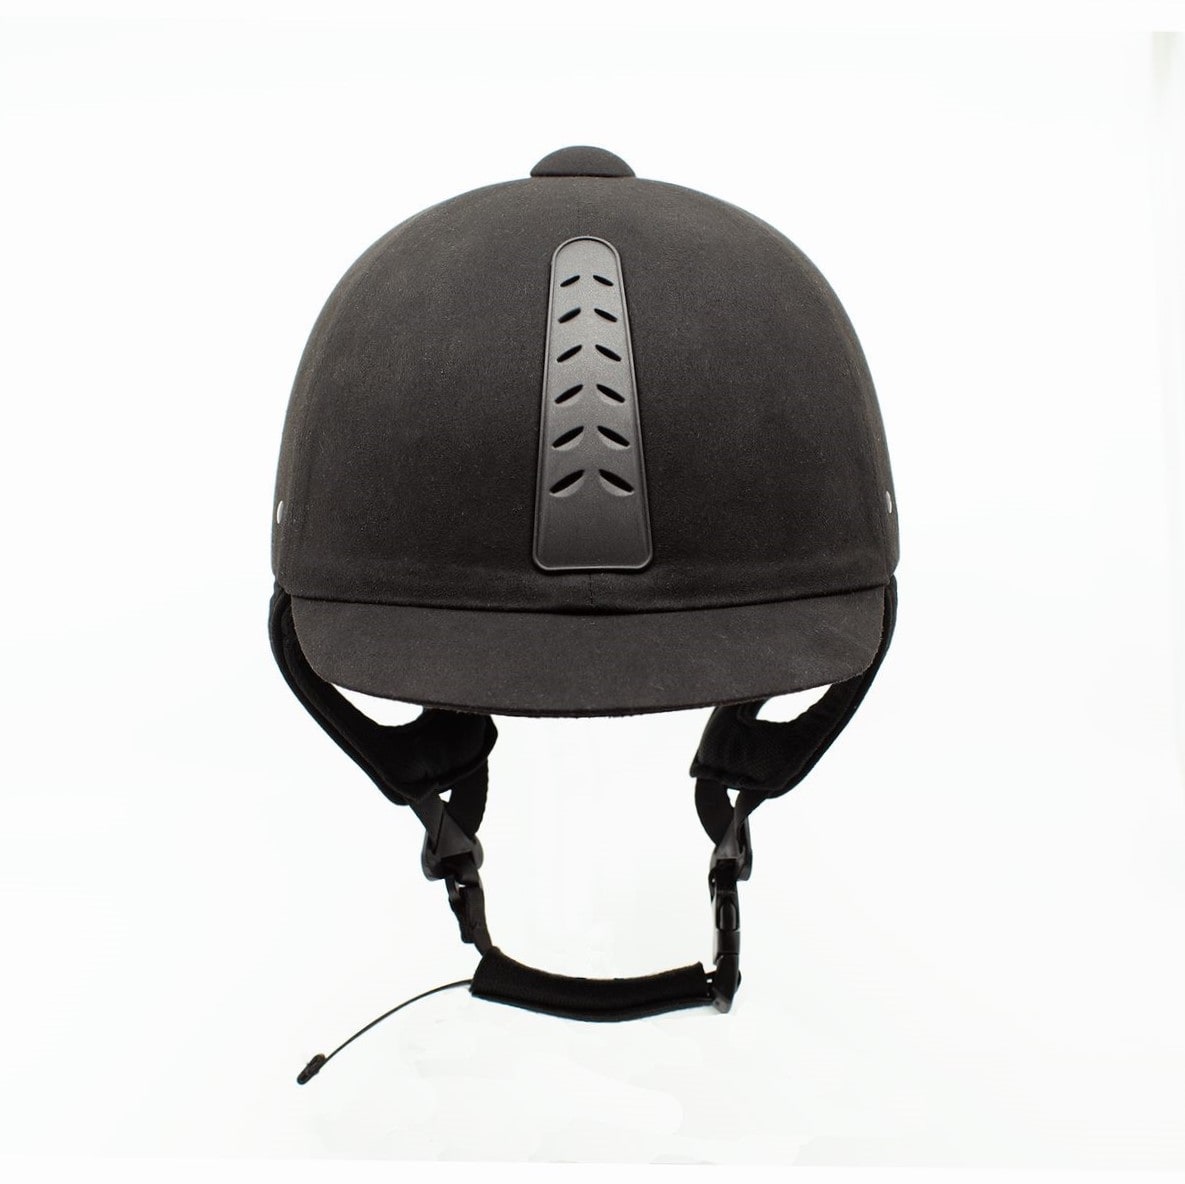 Finntack adjustable Riding Helmet